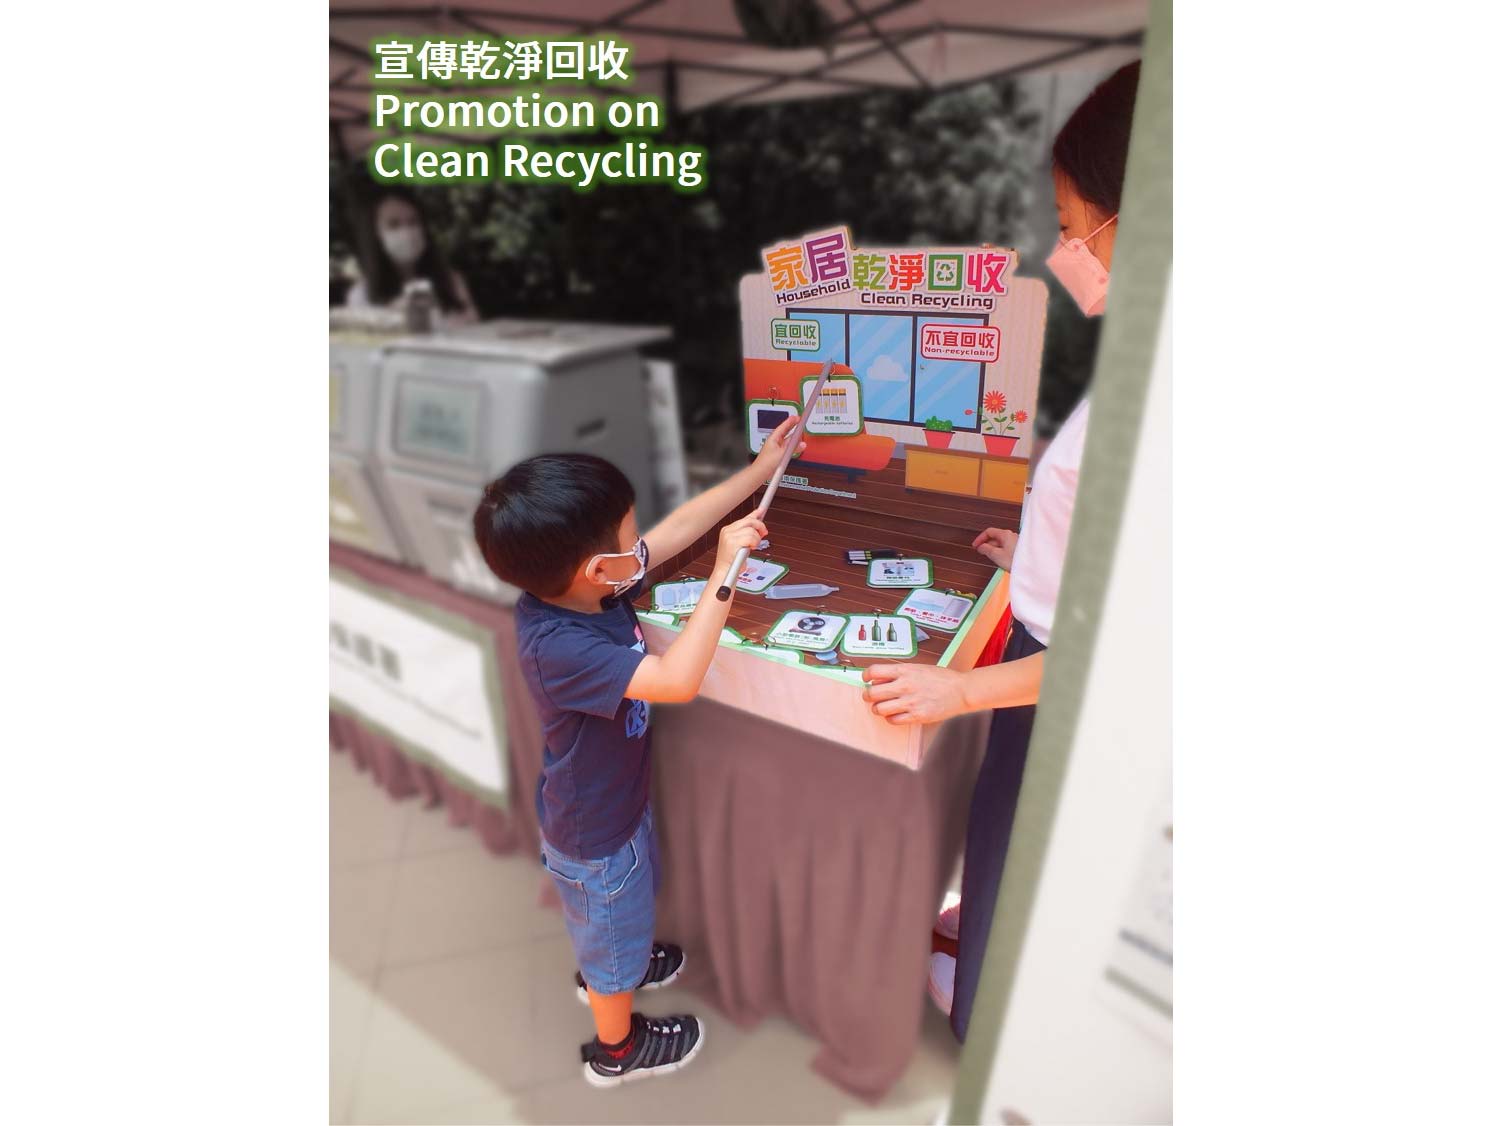 宣傳乾净回收 - 小男孩正參與攤位遊戲分辨「宜回收」及「不宜回收」的物品遊戲